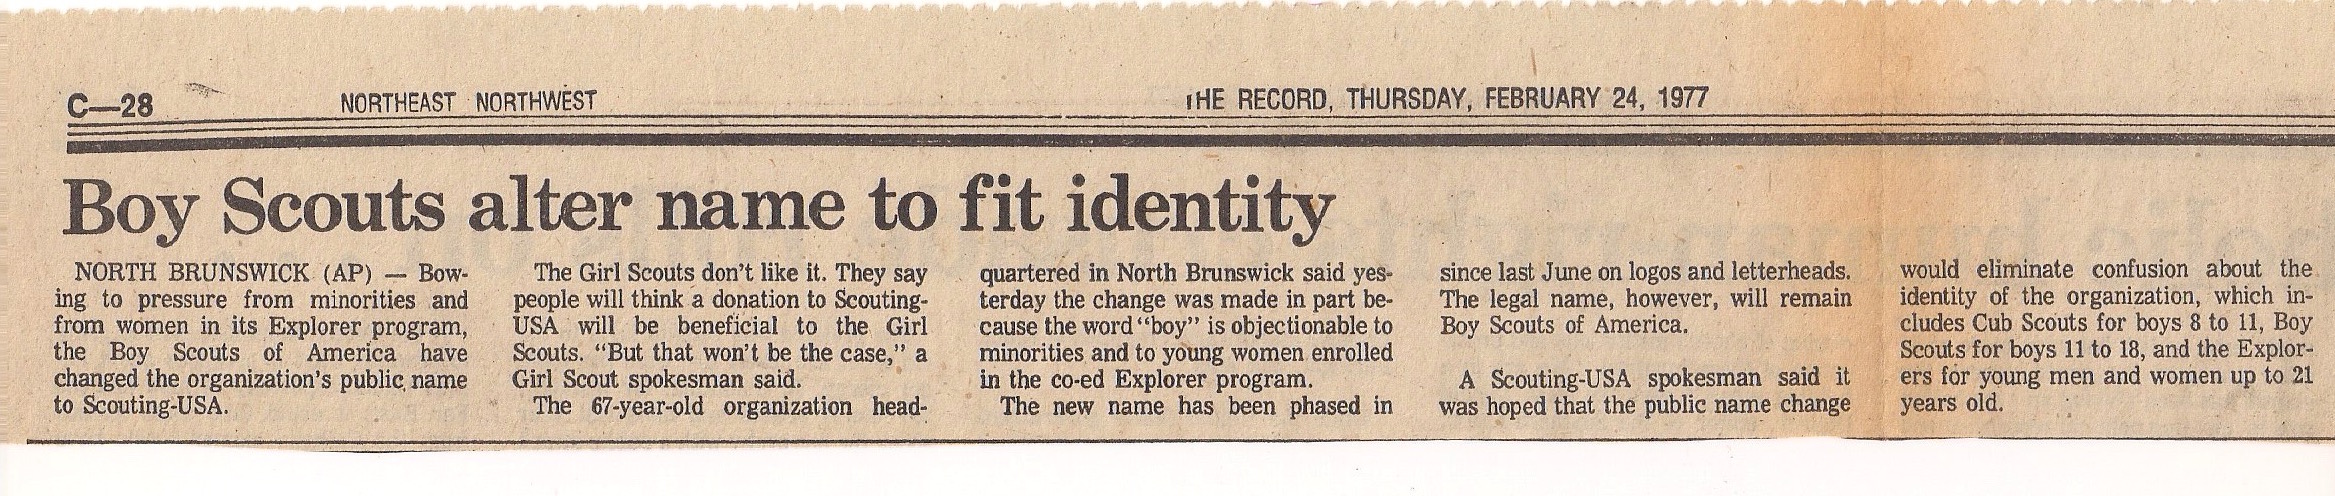 February 24, 1977